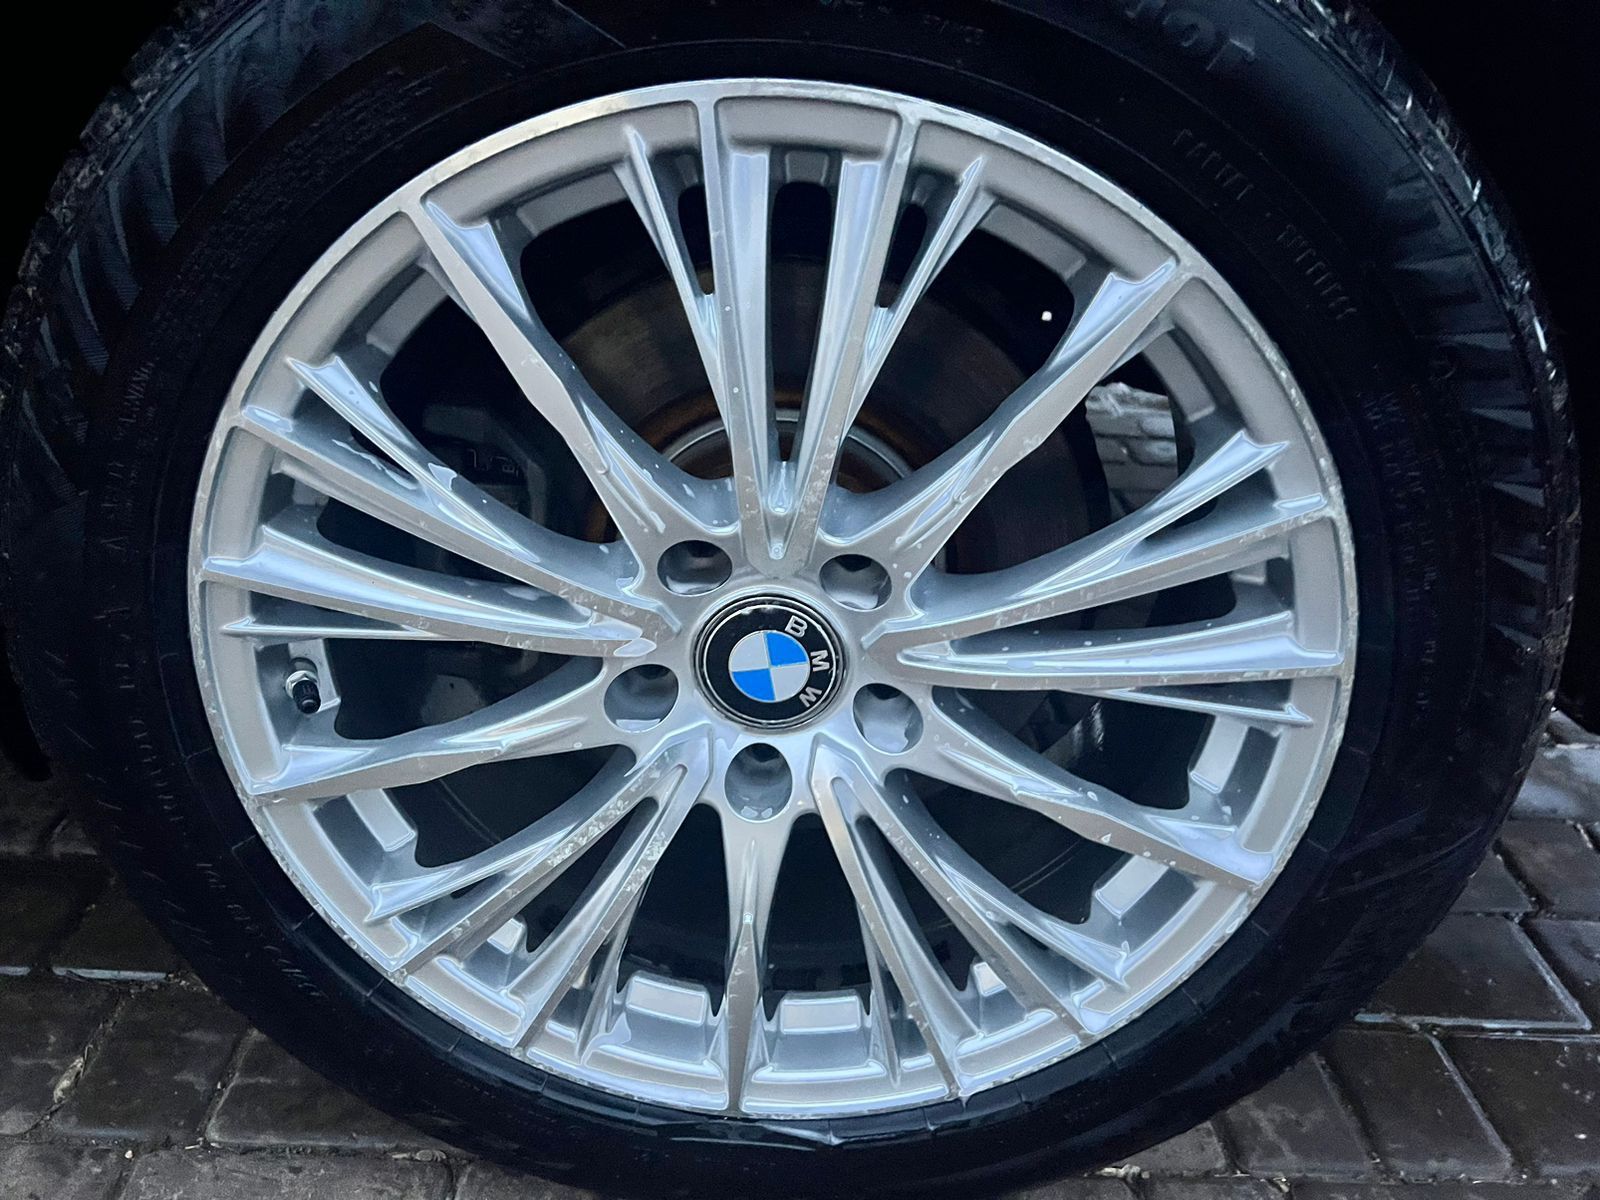 Продам BMW X3 в гарному стані